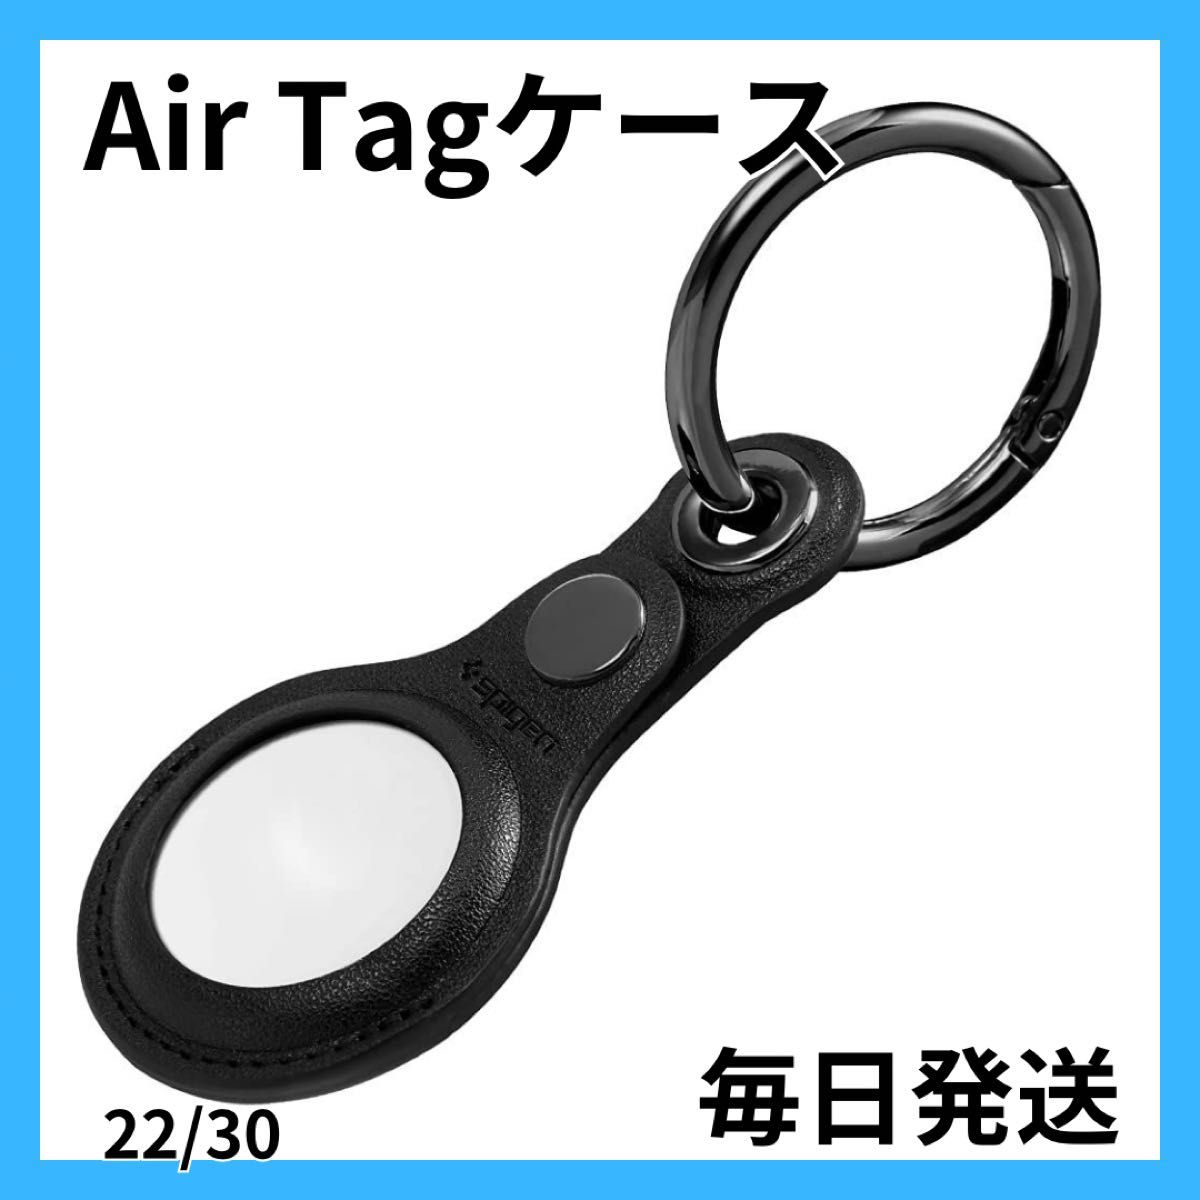 【大特価】AirTag ケース レザー キーホルダー カバー カラビナ付き